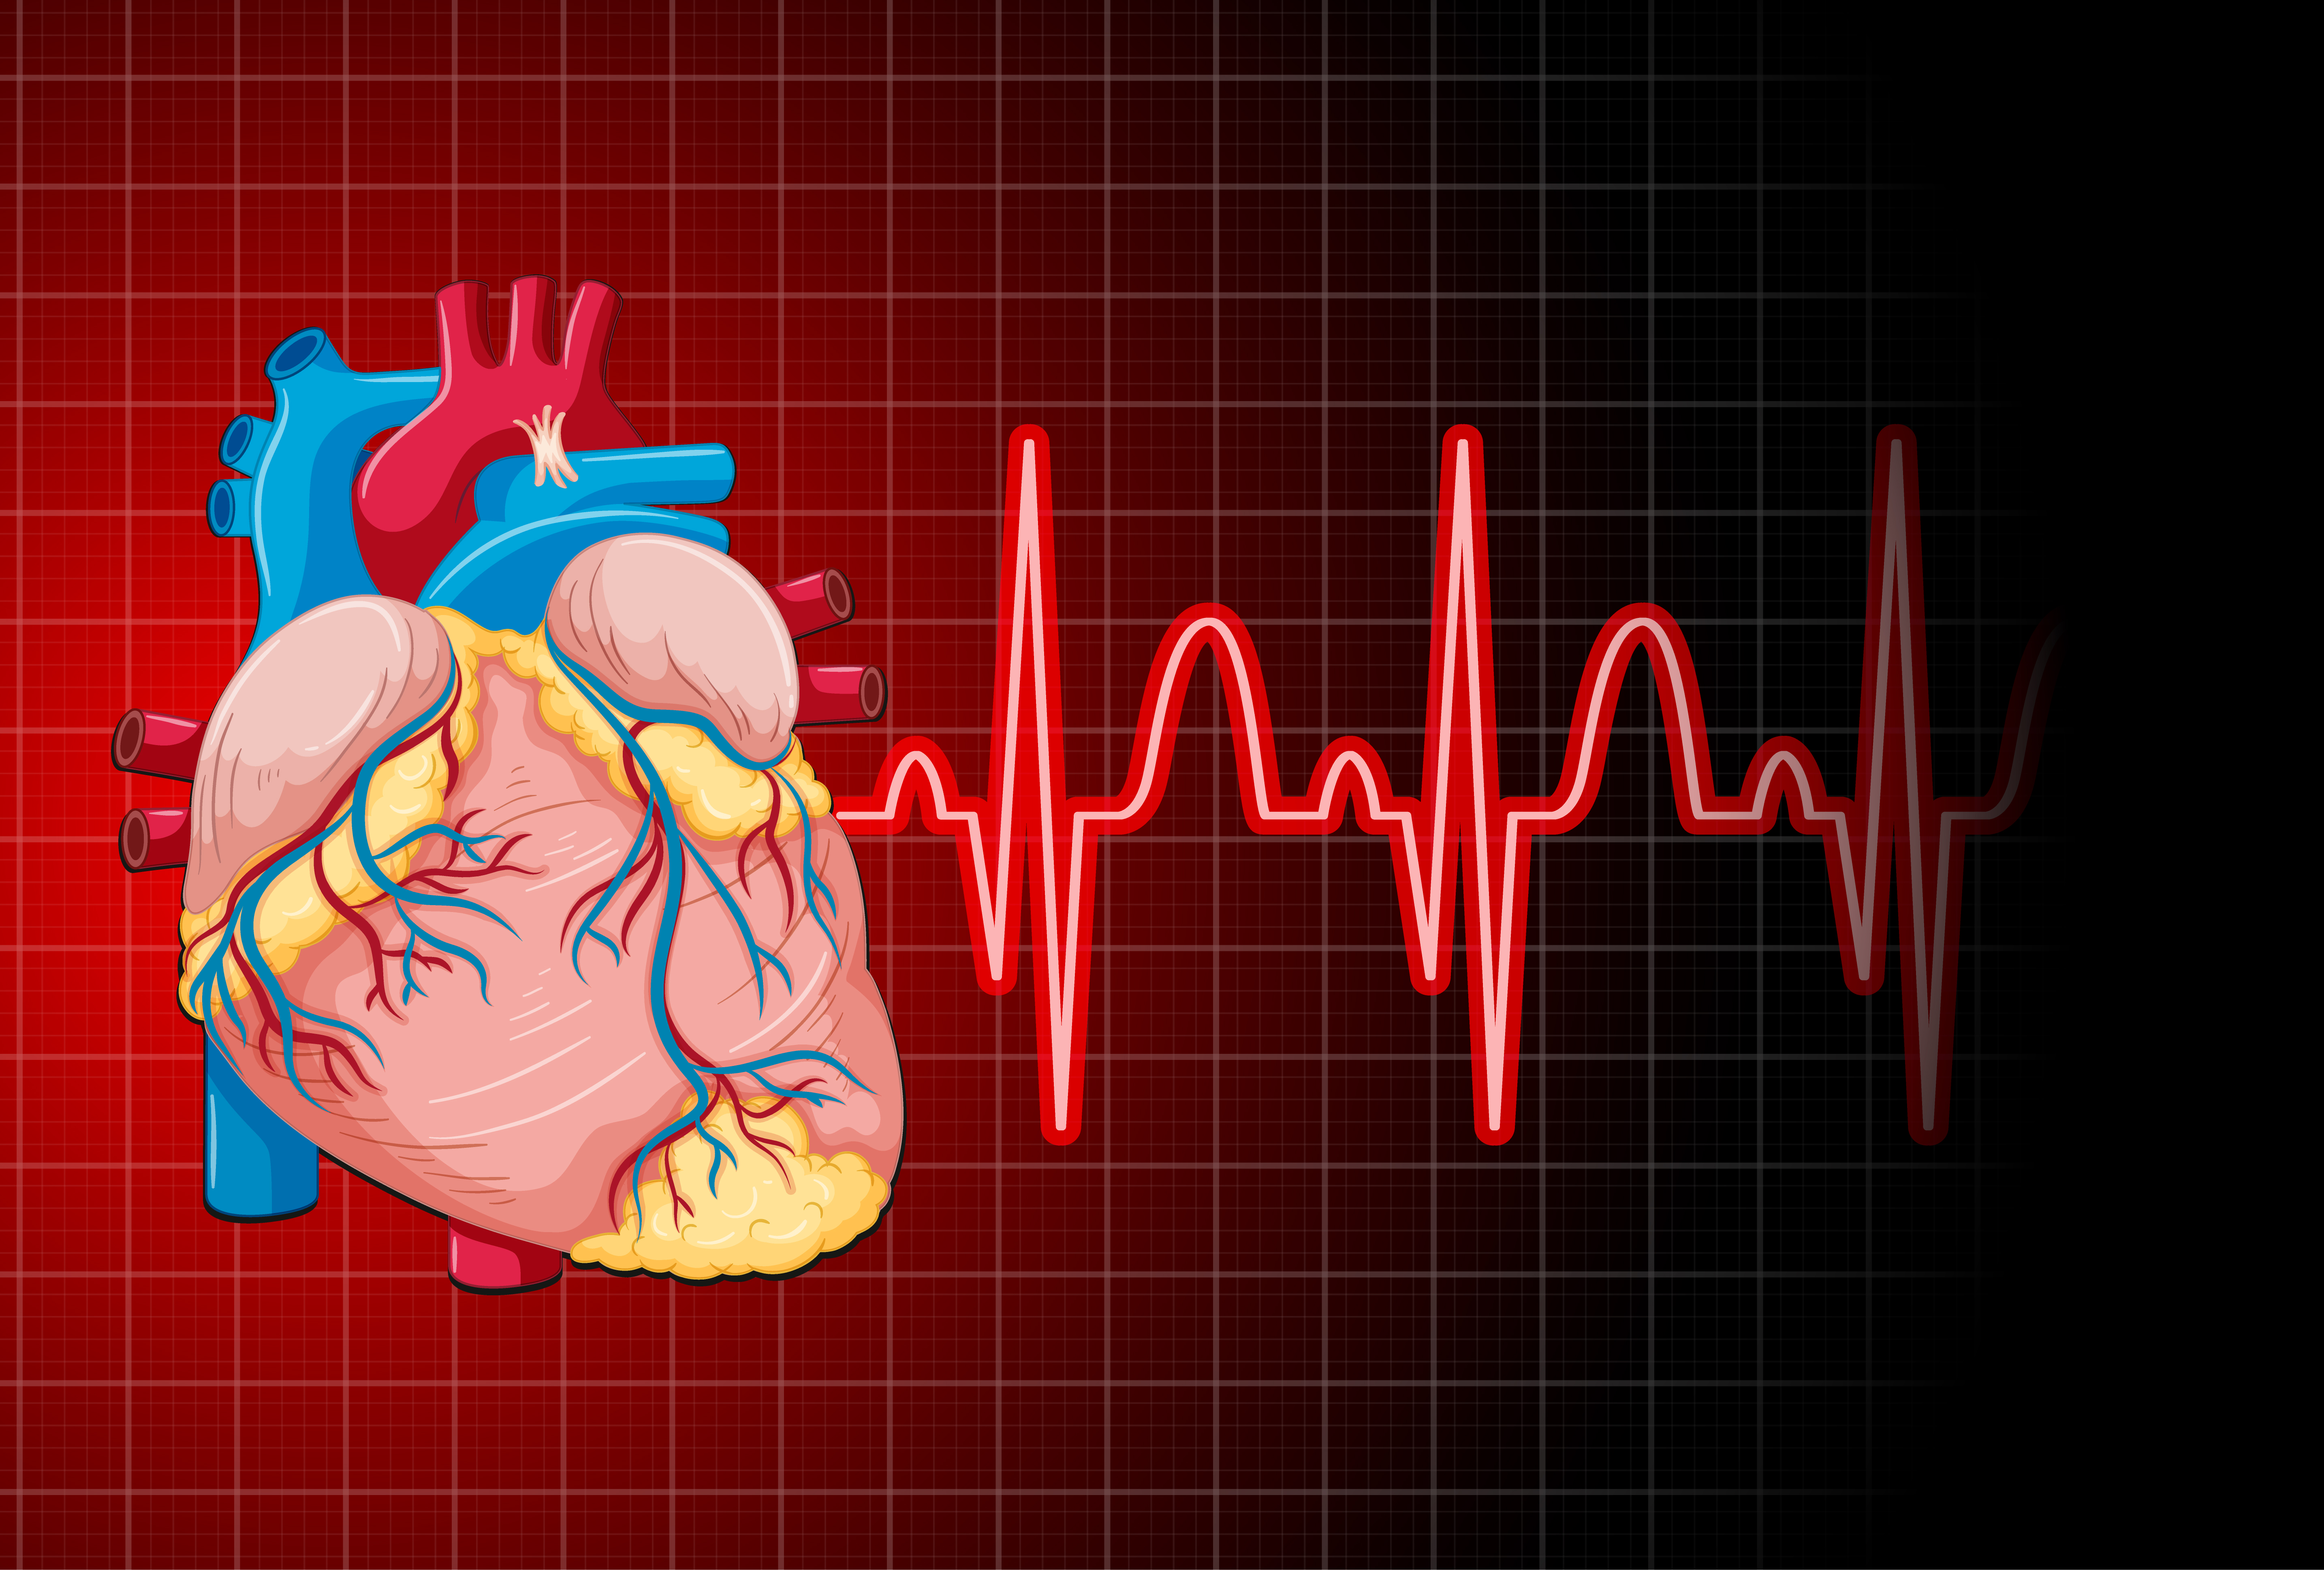 القلب والشرايين: أسباب، أعراض، علاج، طرق الوقاية